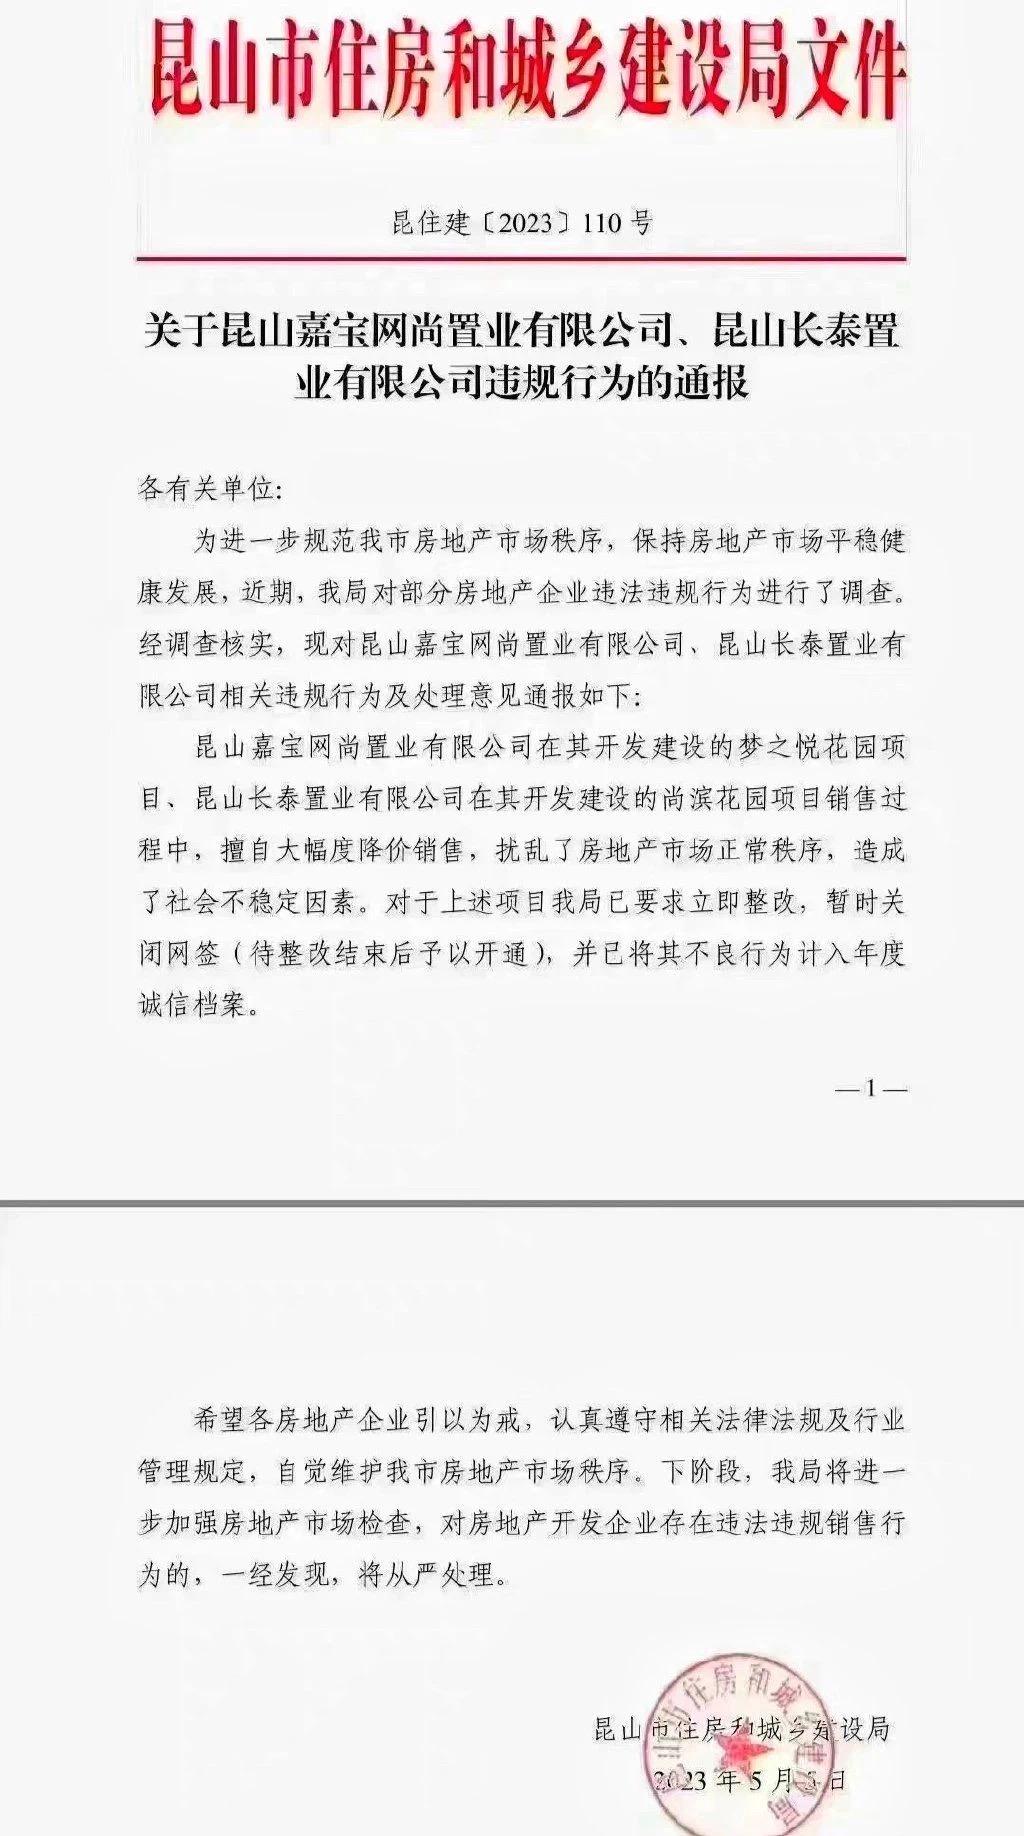 7折卖房，苏州万科和上海嘉宝带头降价被昆山政府处罚